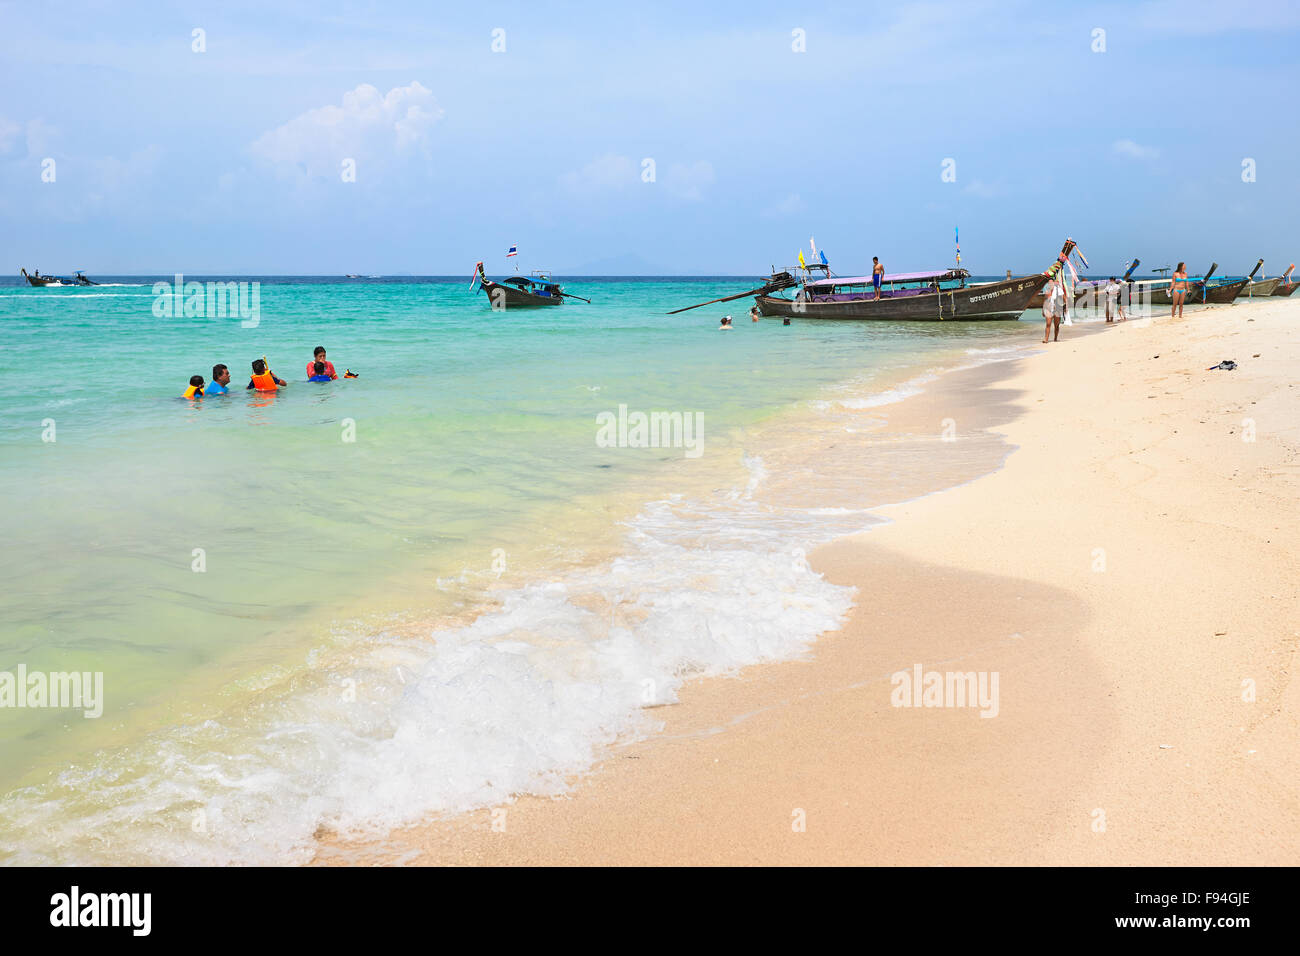 Plage de sable sur l'île de Poda (Koh Poda). La province de Krabi, Thaïlande. Banque D'Images